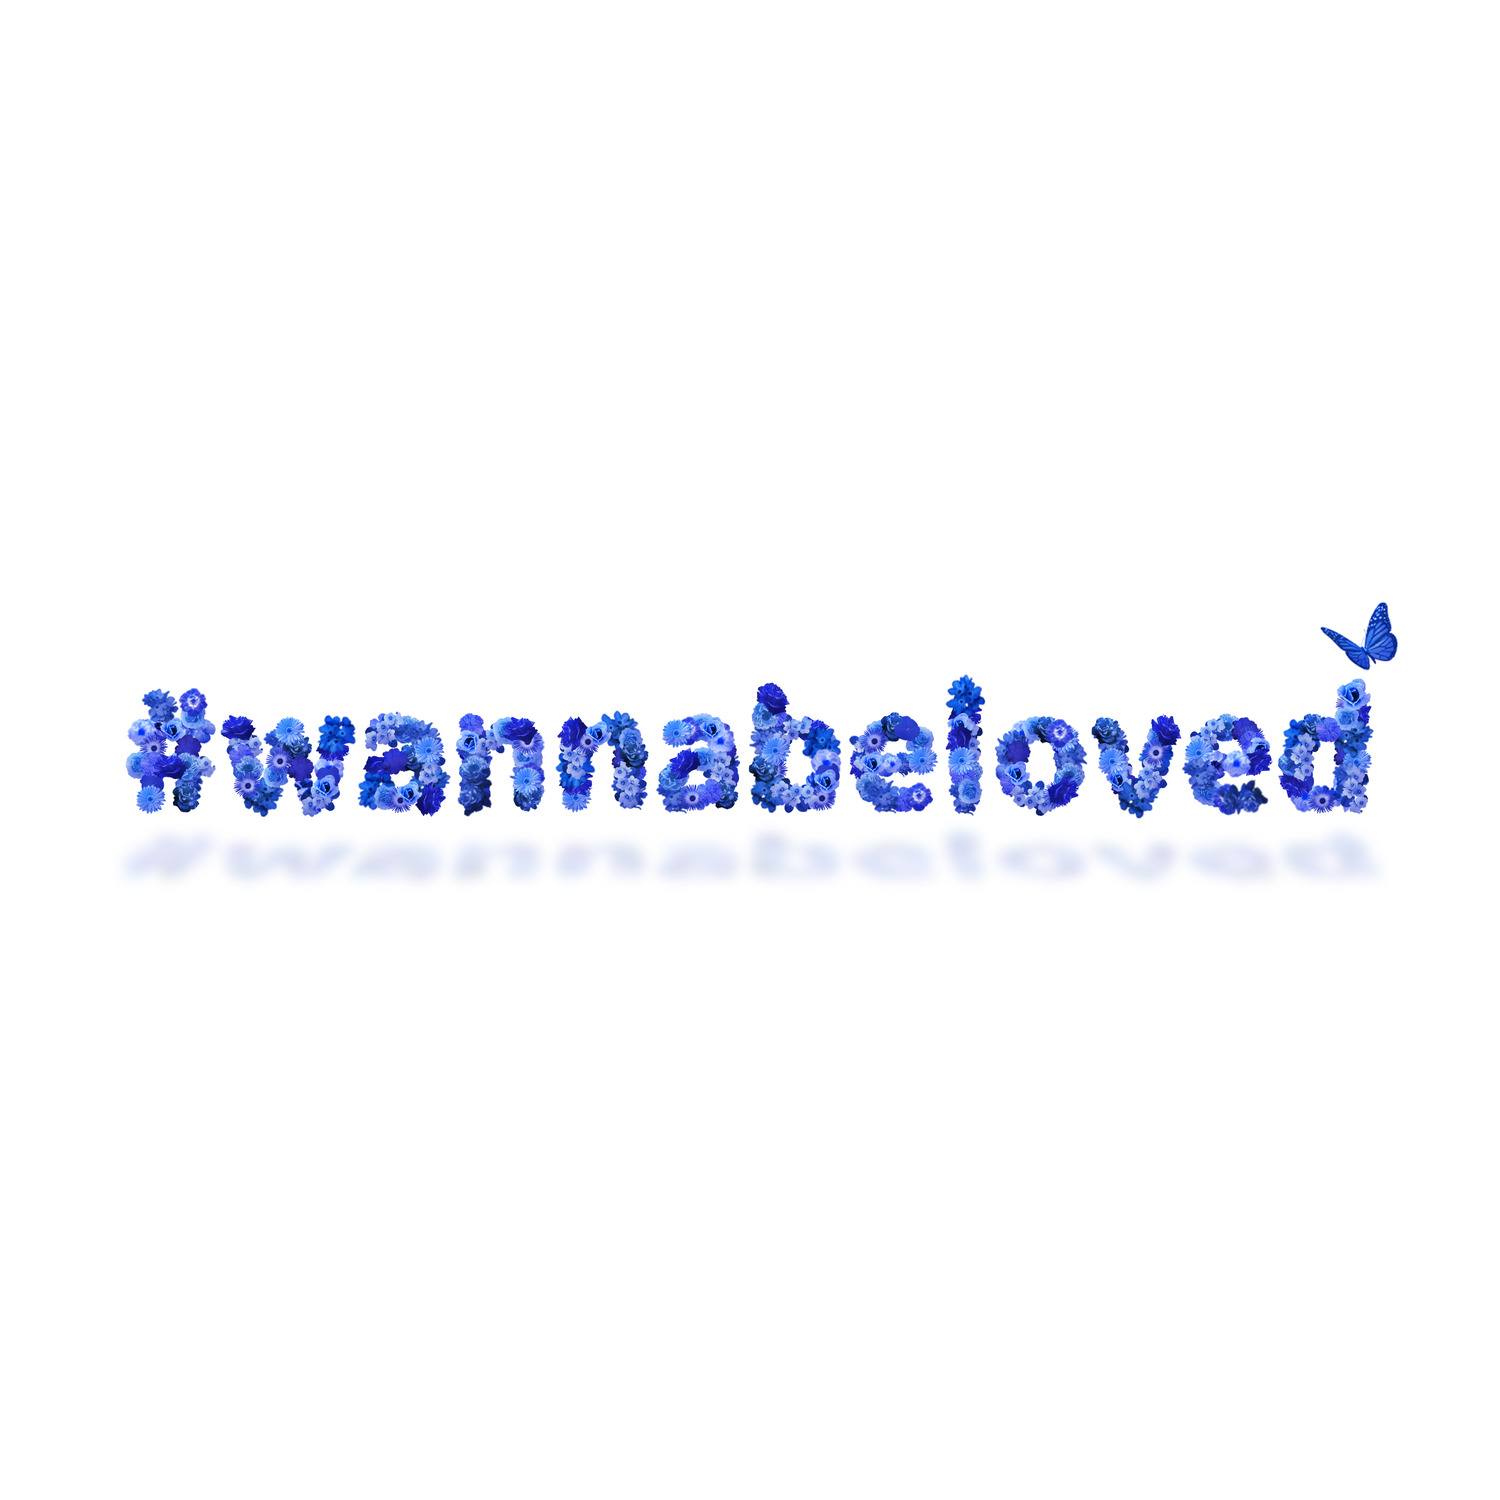 #wannabeloved